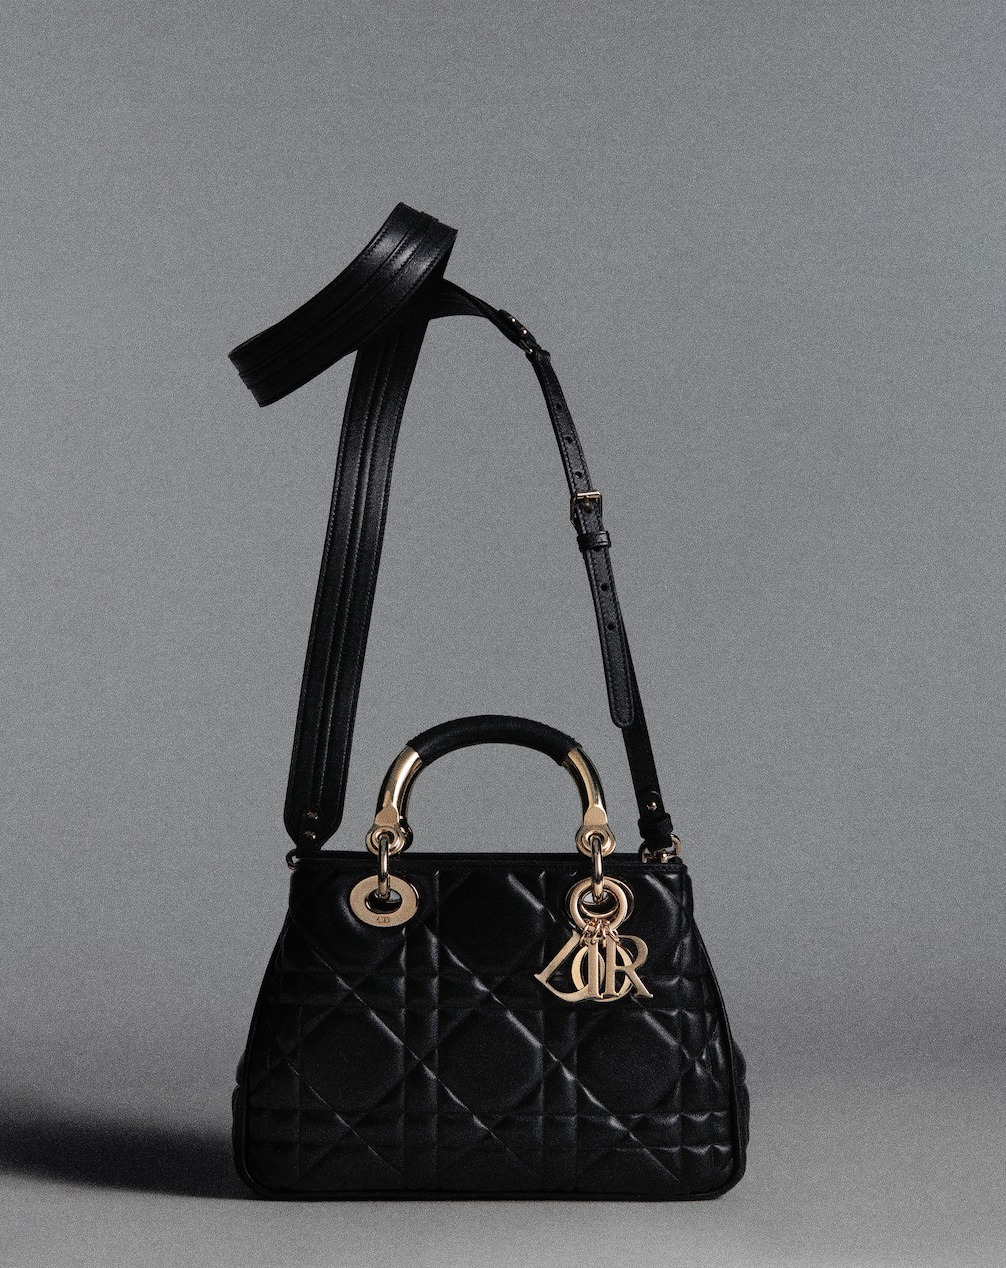 Новые леди: сумка Lady Dior 95.22